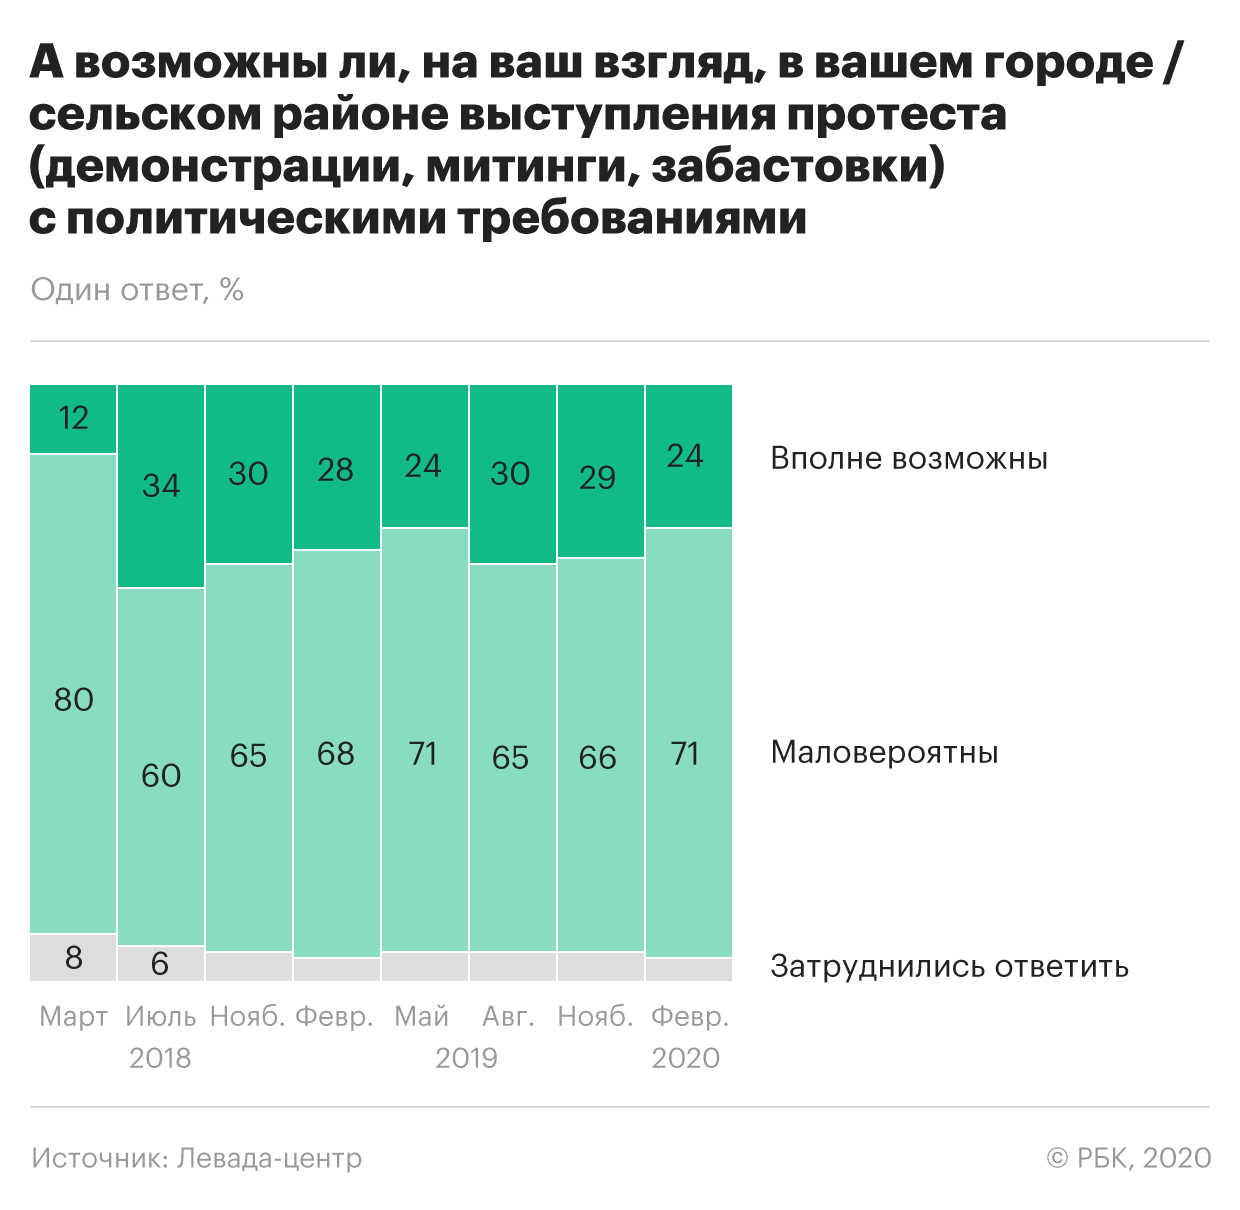 Социологи зафиксировали снижение уровня протестных настроений россиян